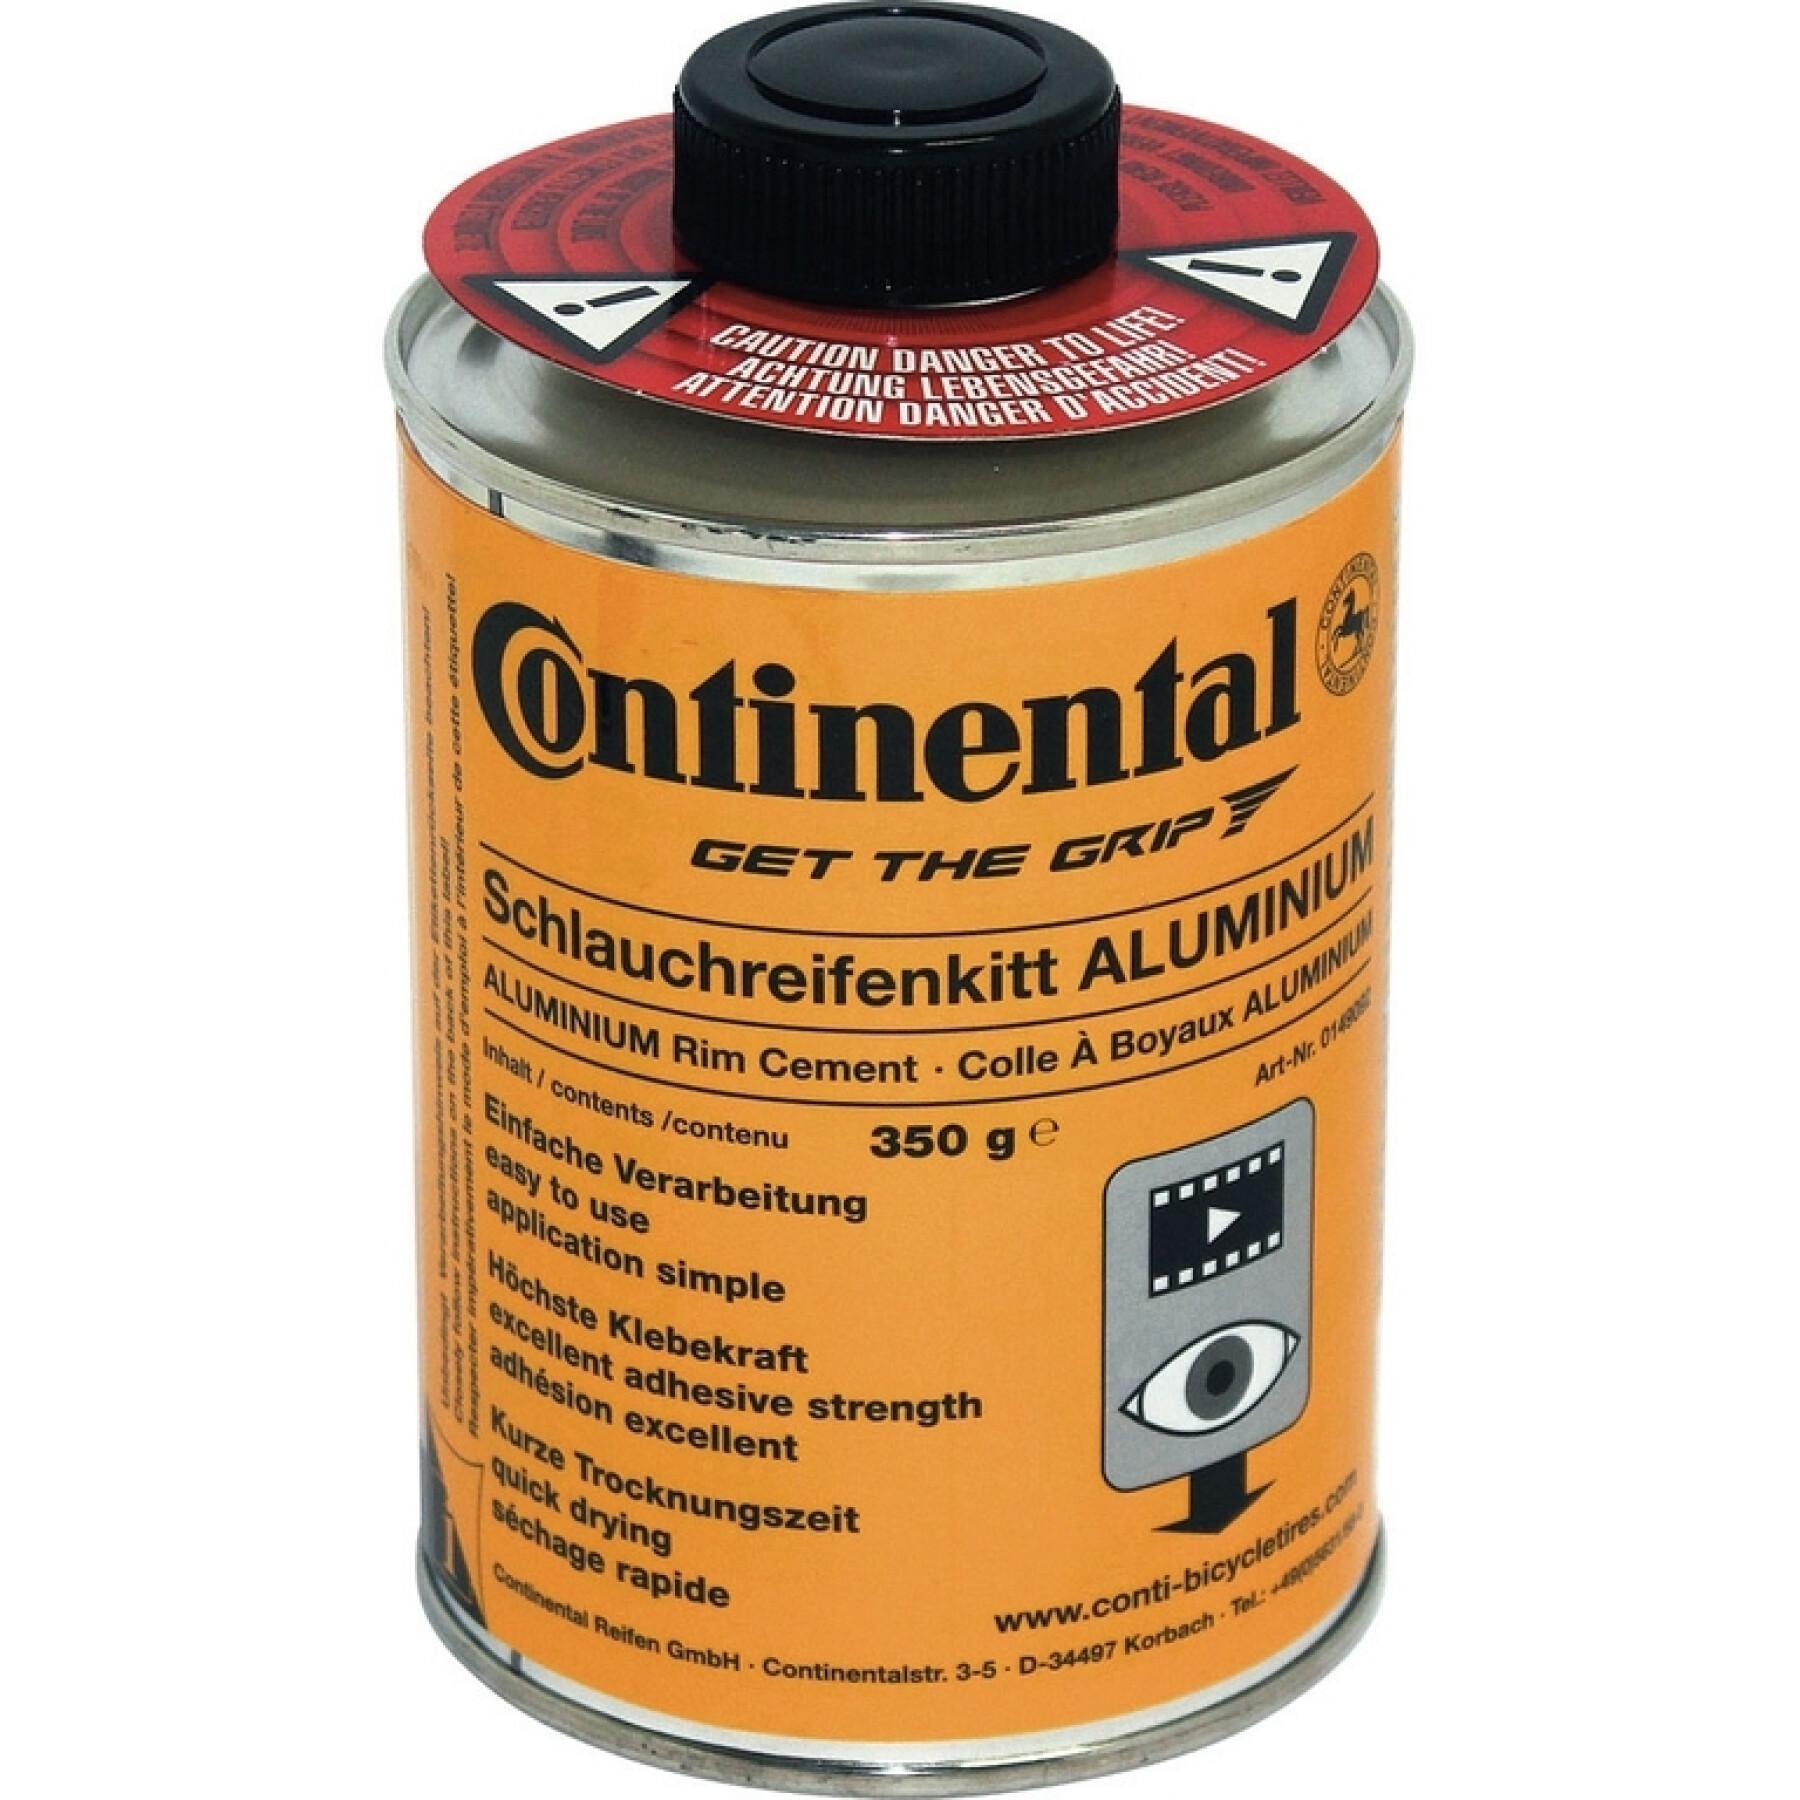 Pot de colle pour boyau Continental 350g